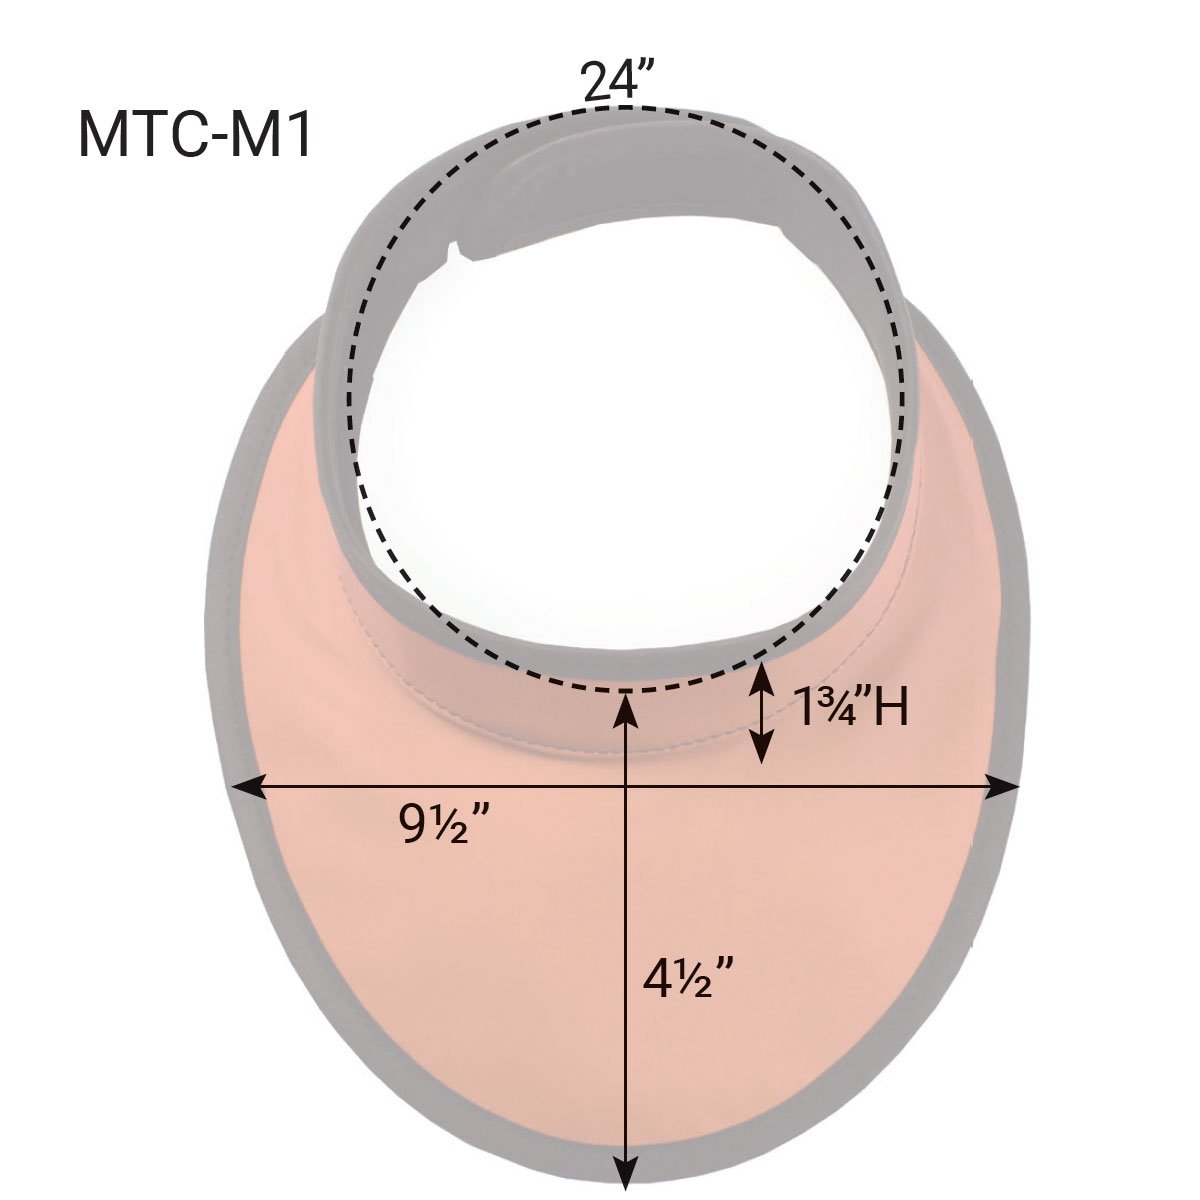 MTC-M1 Measurement